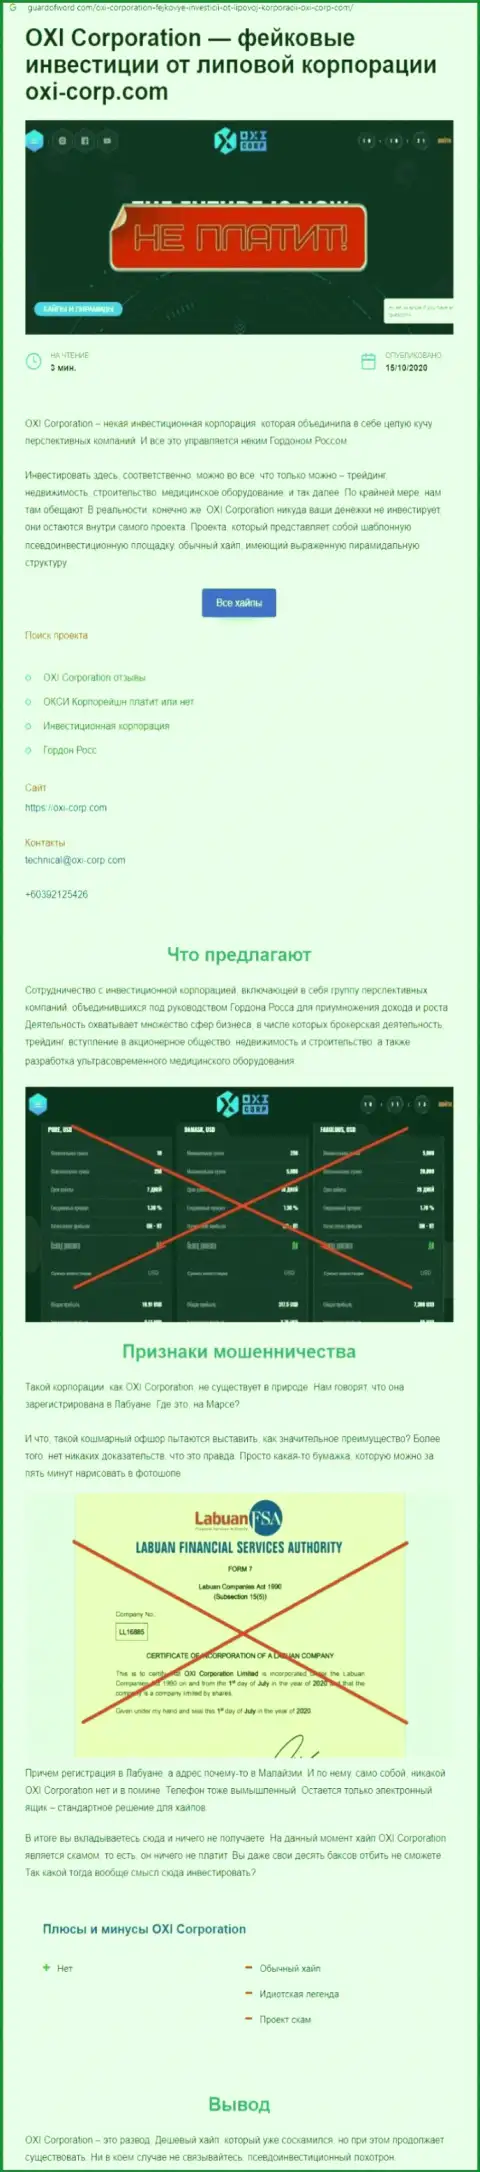 Обзор Окси Корпорейшн, который позаимствован на одном из сайтов-отзовиков